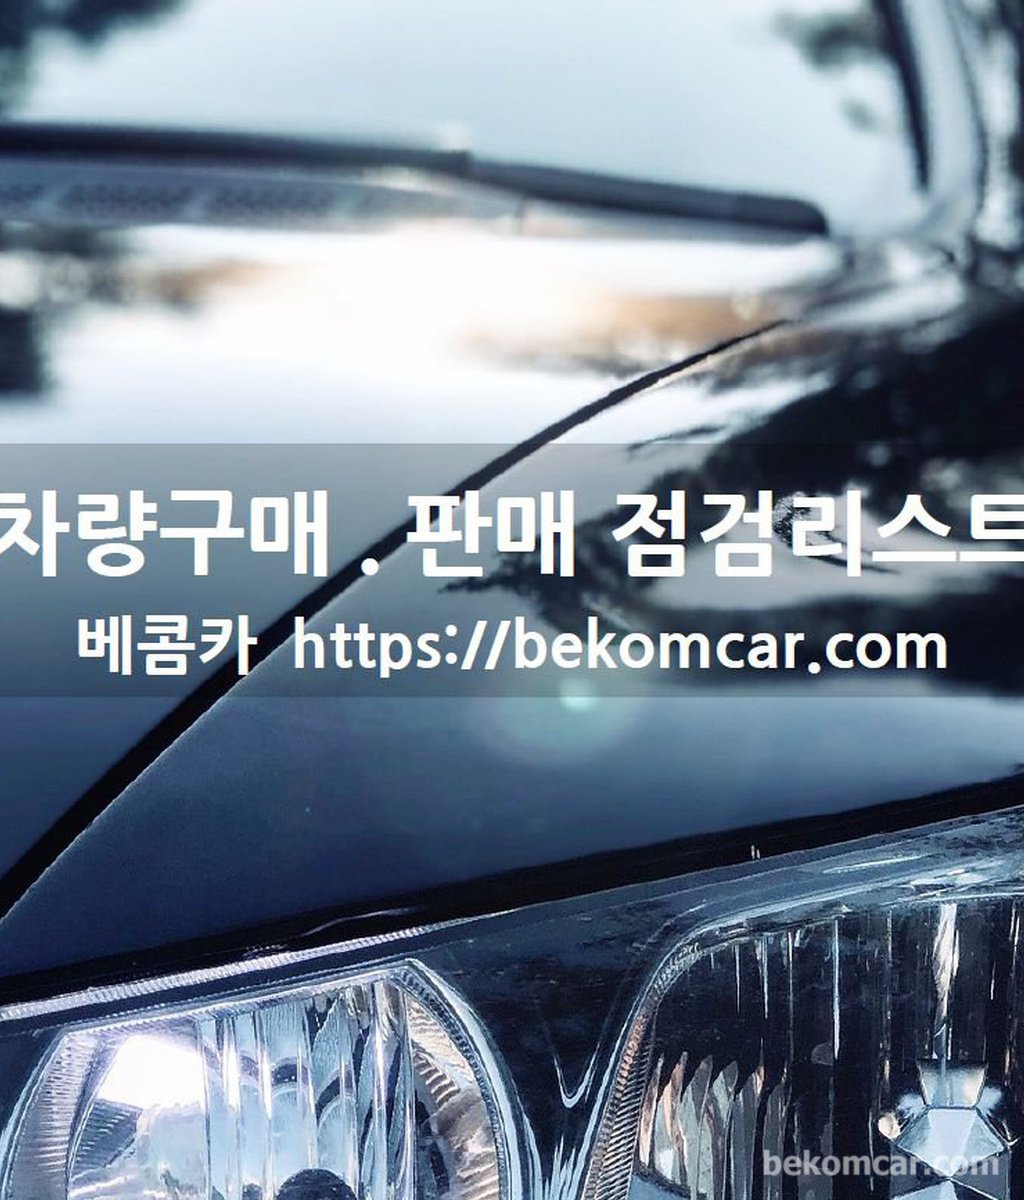 중고차 구매.판매시 점검 체크리스트 다운로드|베콤카 (bekomcar.com)